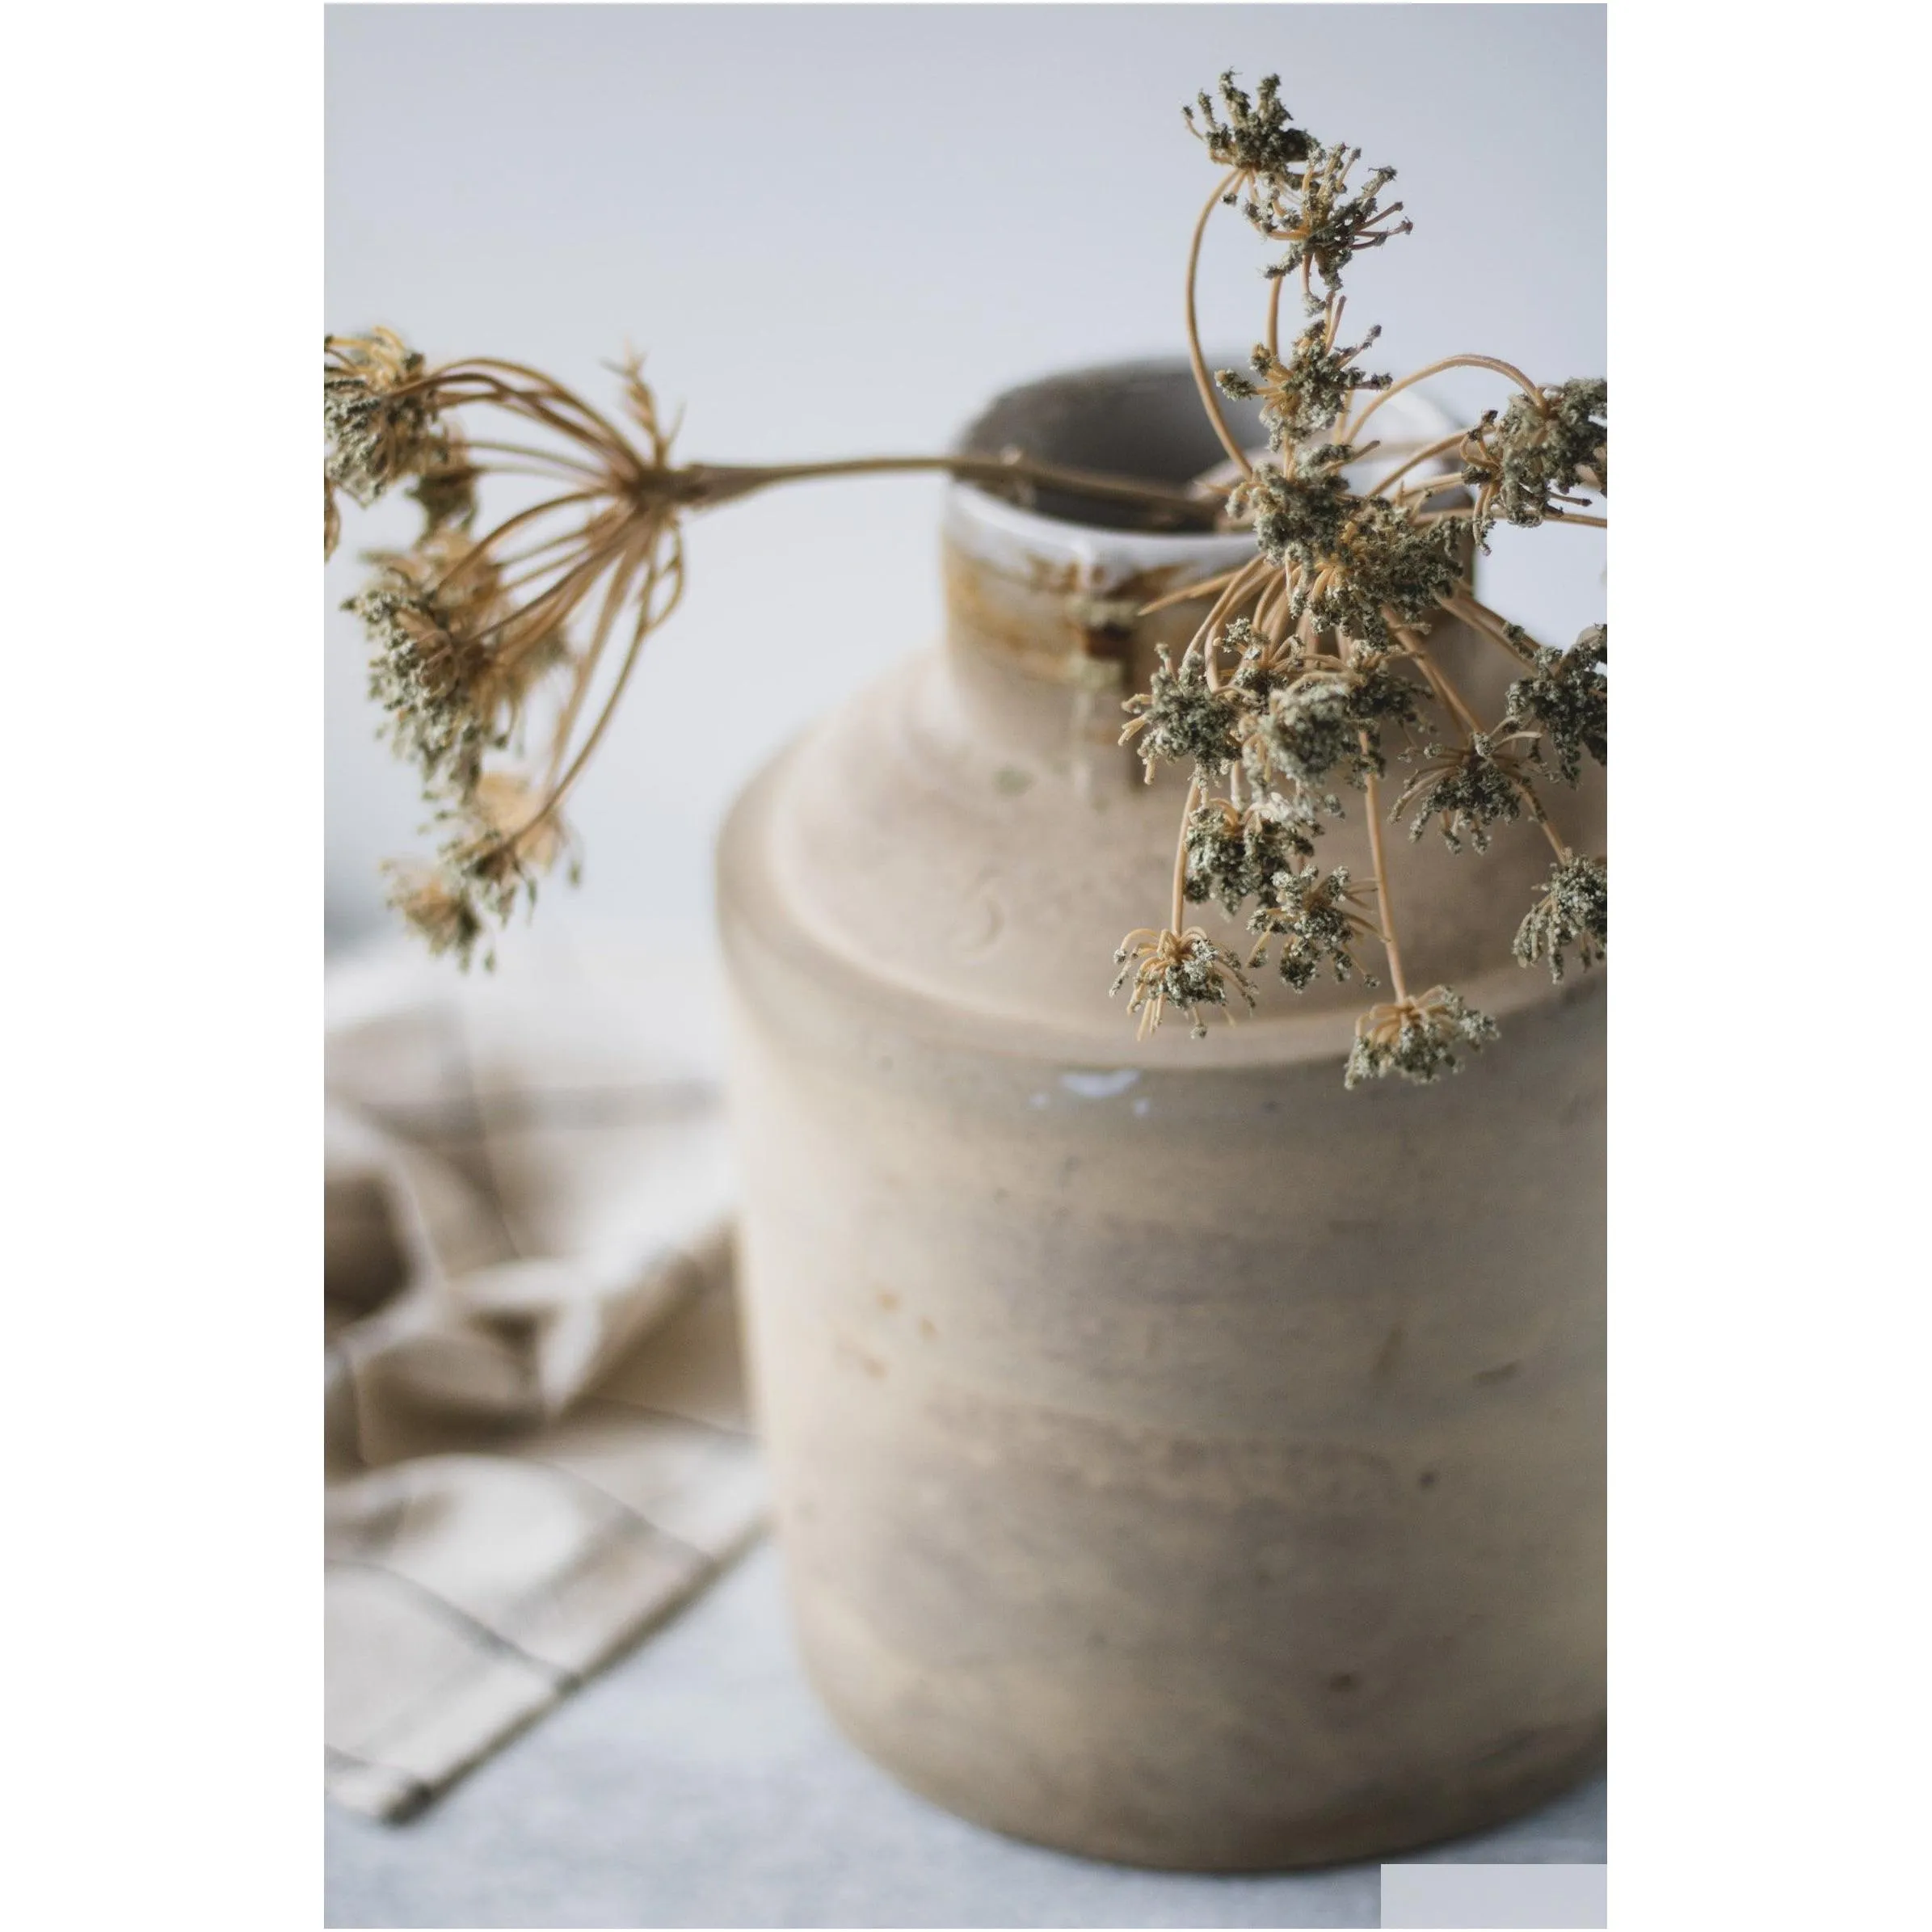 Vases Antique Beige Stoneware Clogk Vase Unglazed Rustic Primitive Y Old Fermentation Jar Drop Delivery Home Garden Home Decor Otdnm